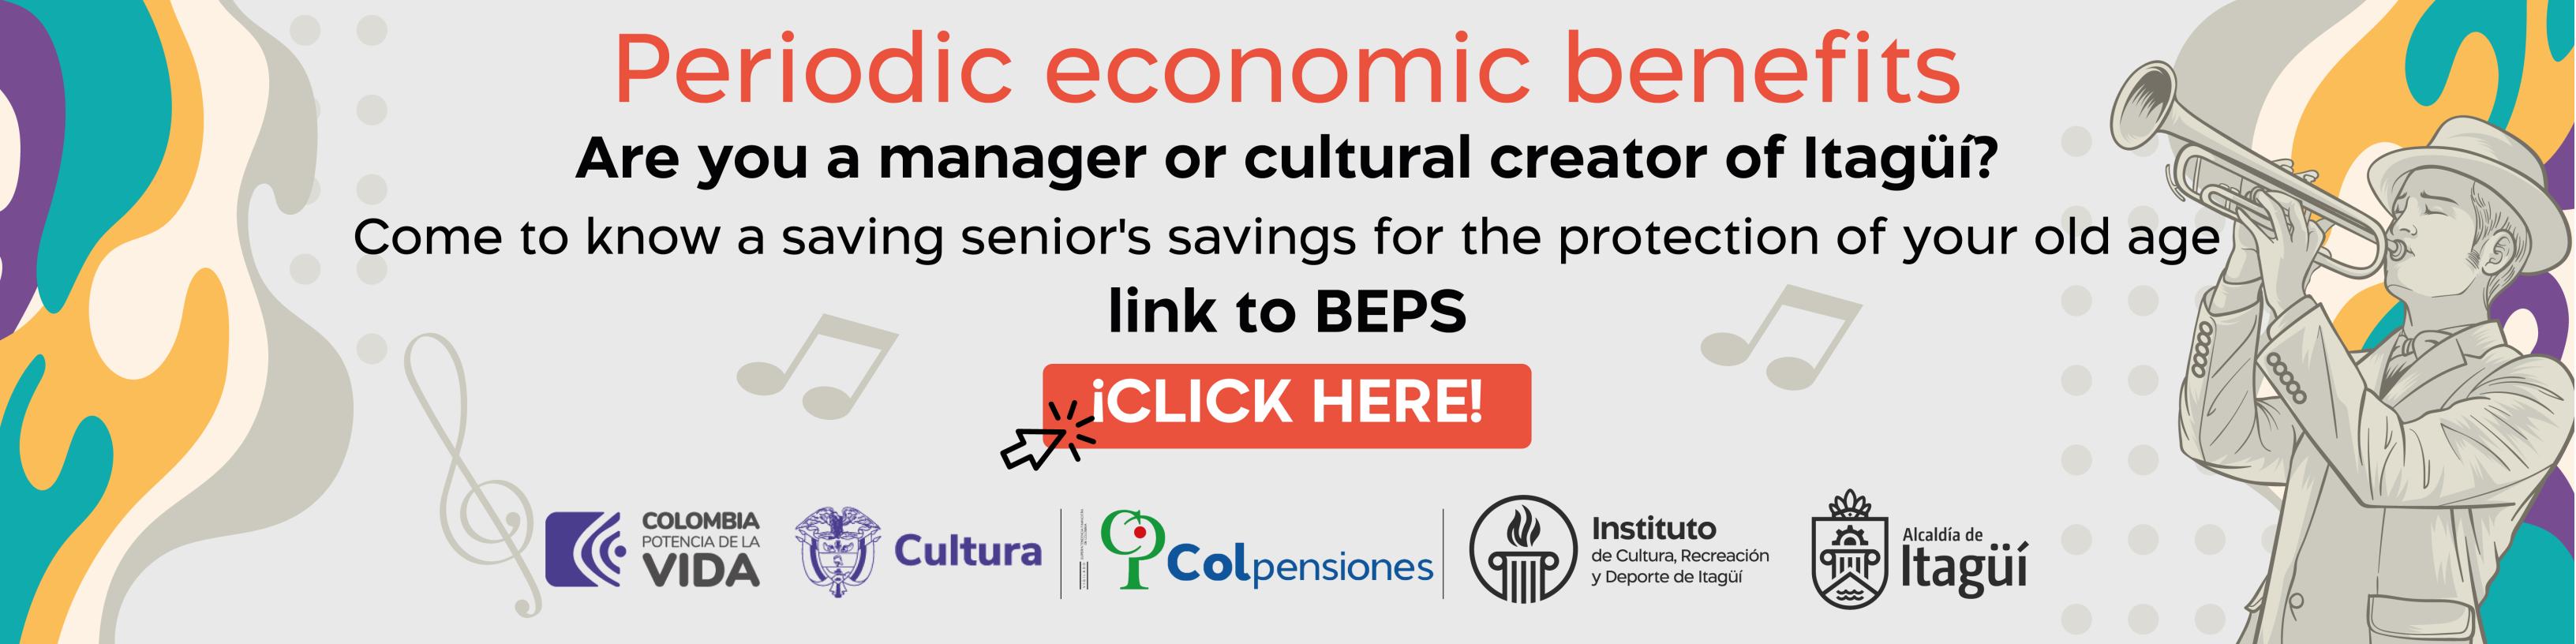 Periodic economic benefits Link to BEPS